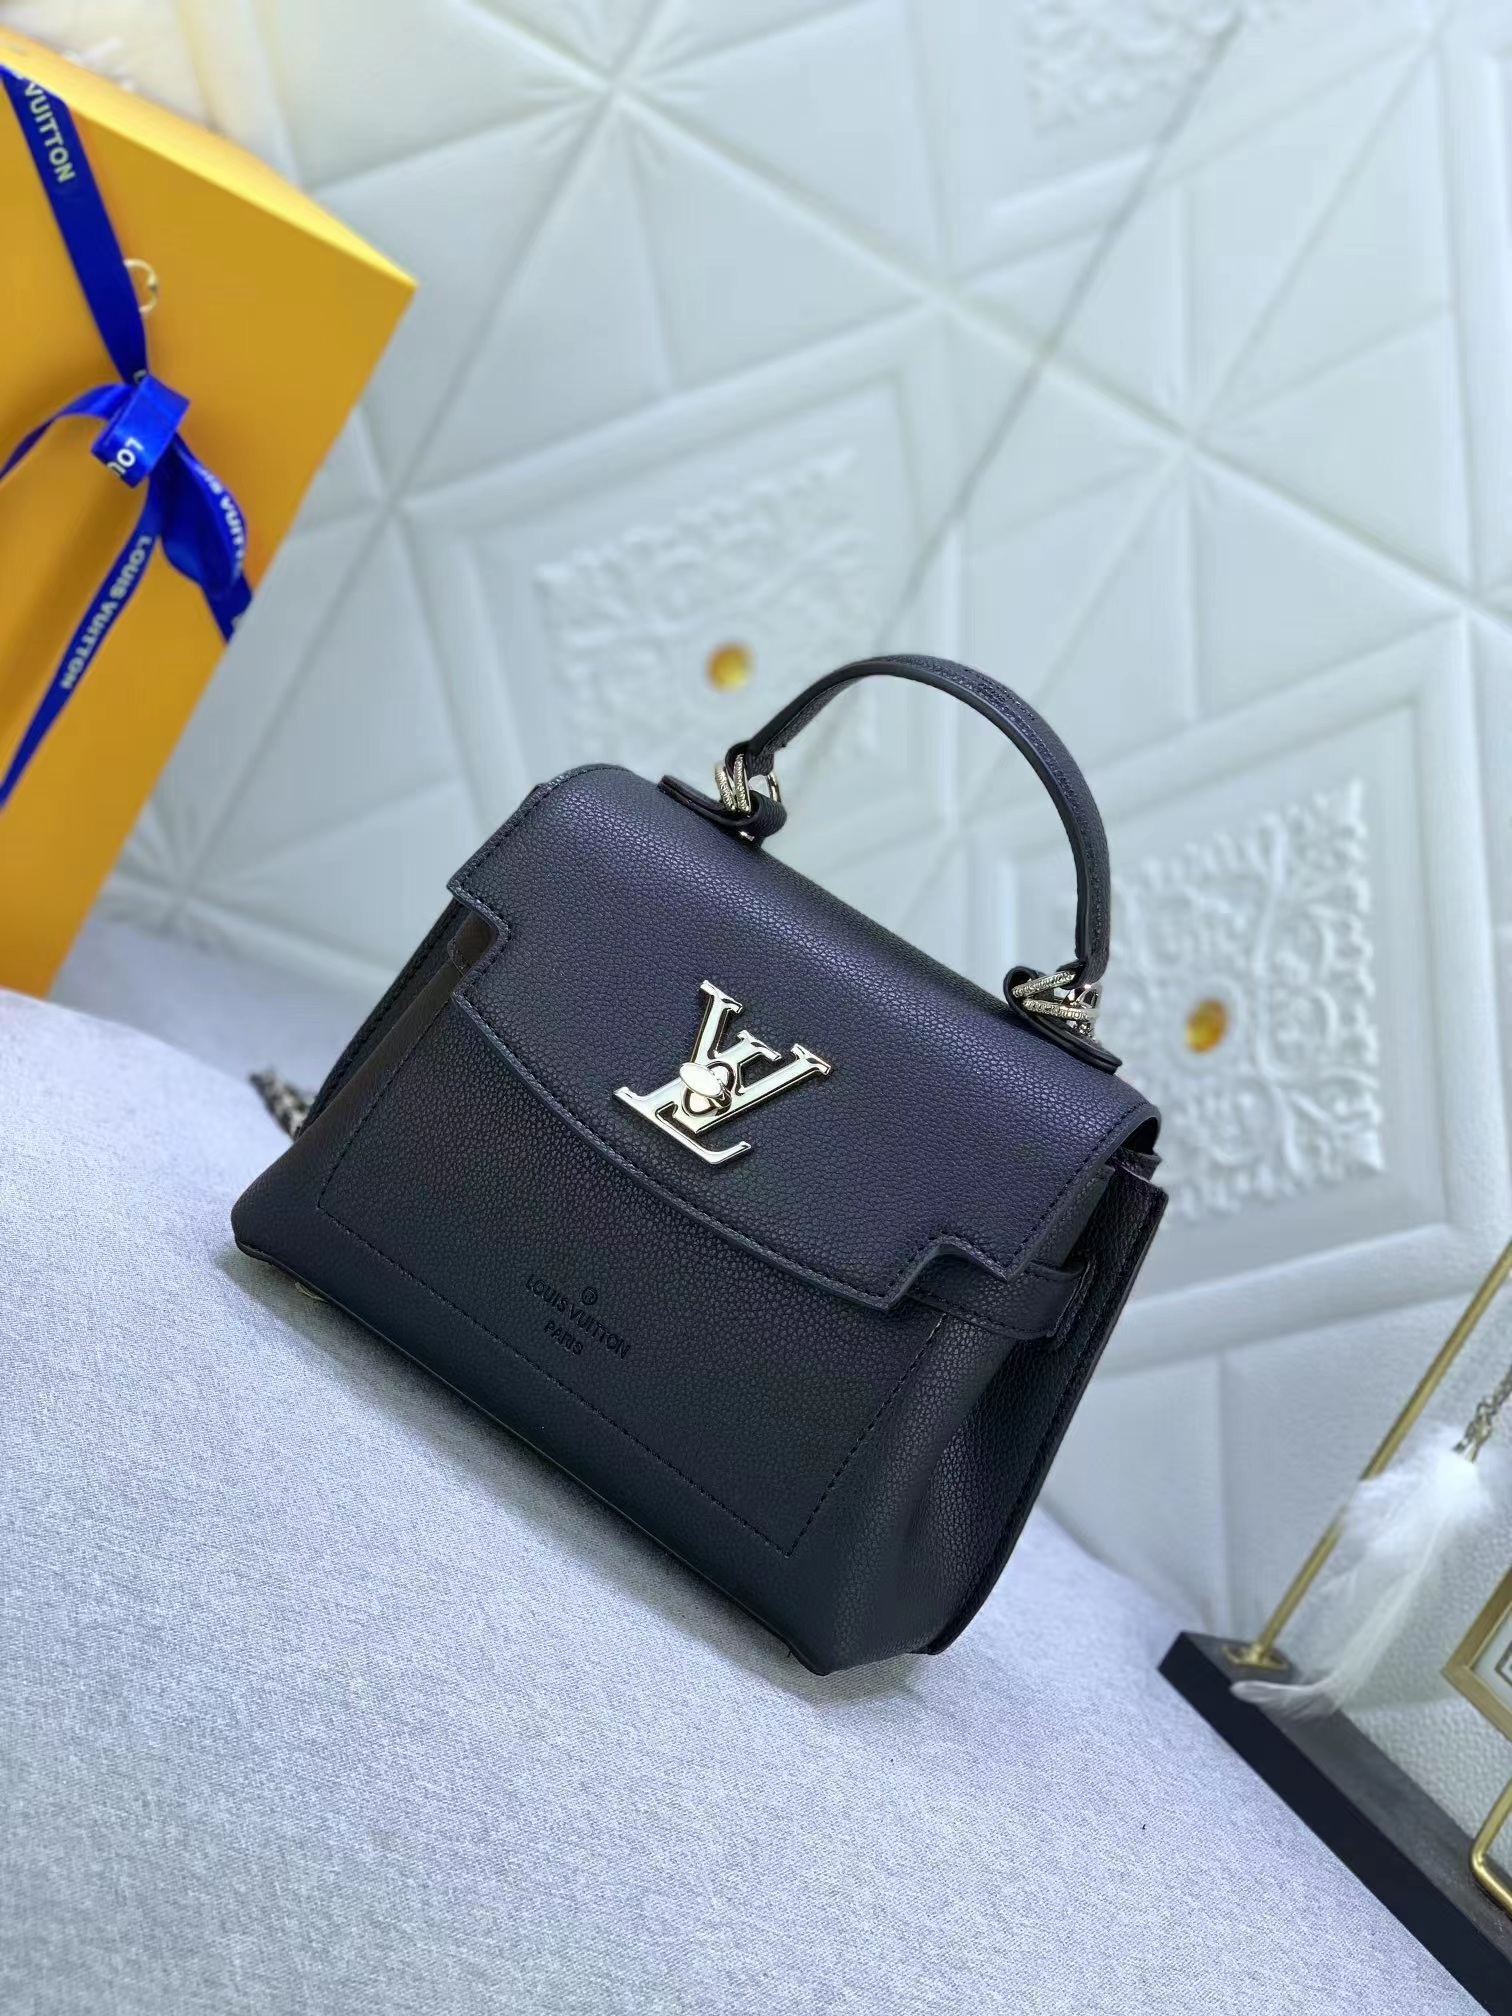 Best Replicas Bags - Louis Vuitton LV Lockme Ever Mini Bag M20997 Black Top Quality Louis Vuitton LV Replica Bags On Sales